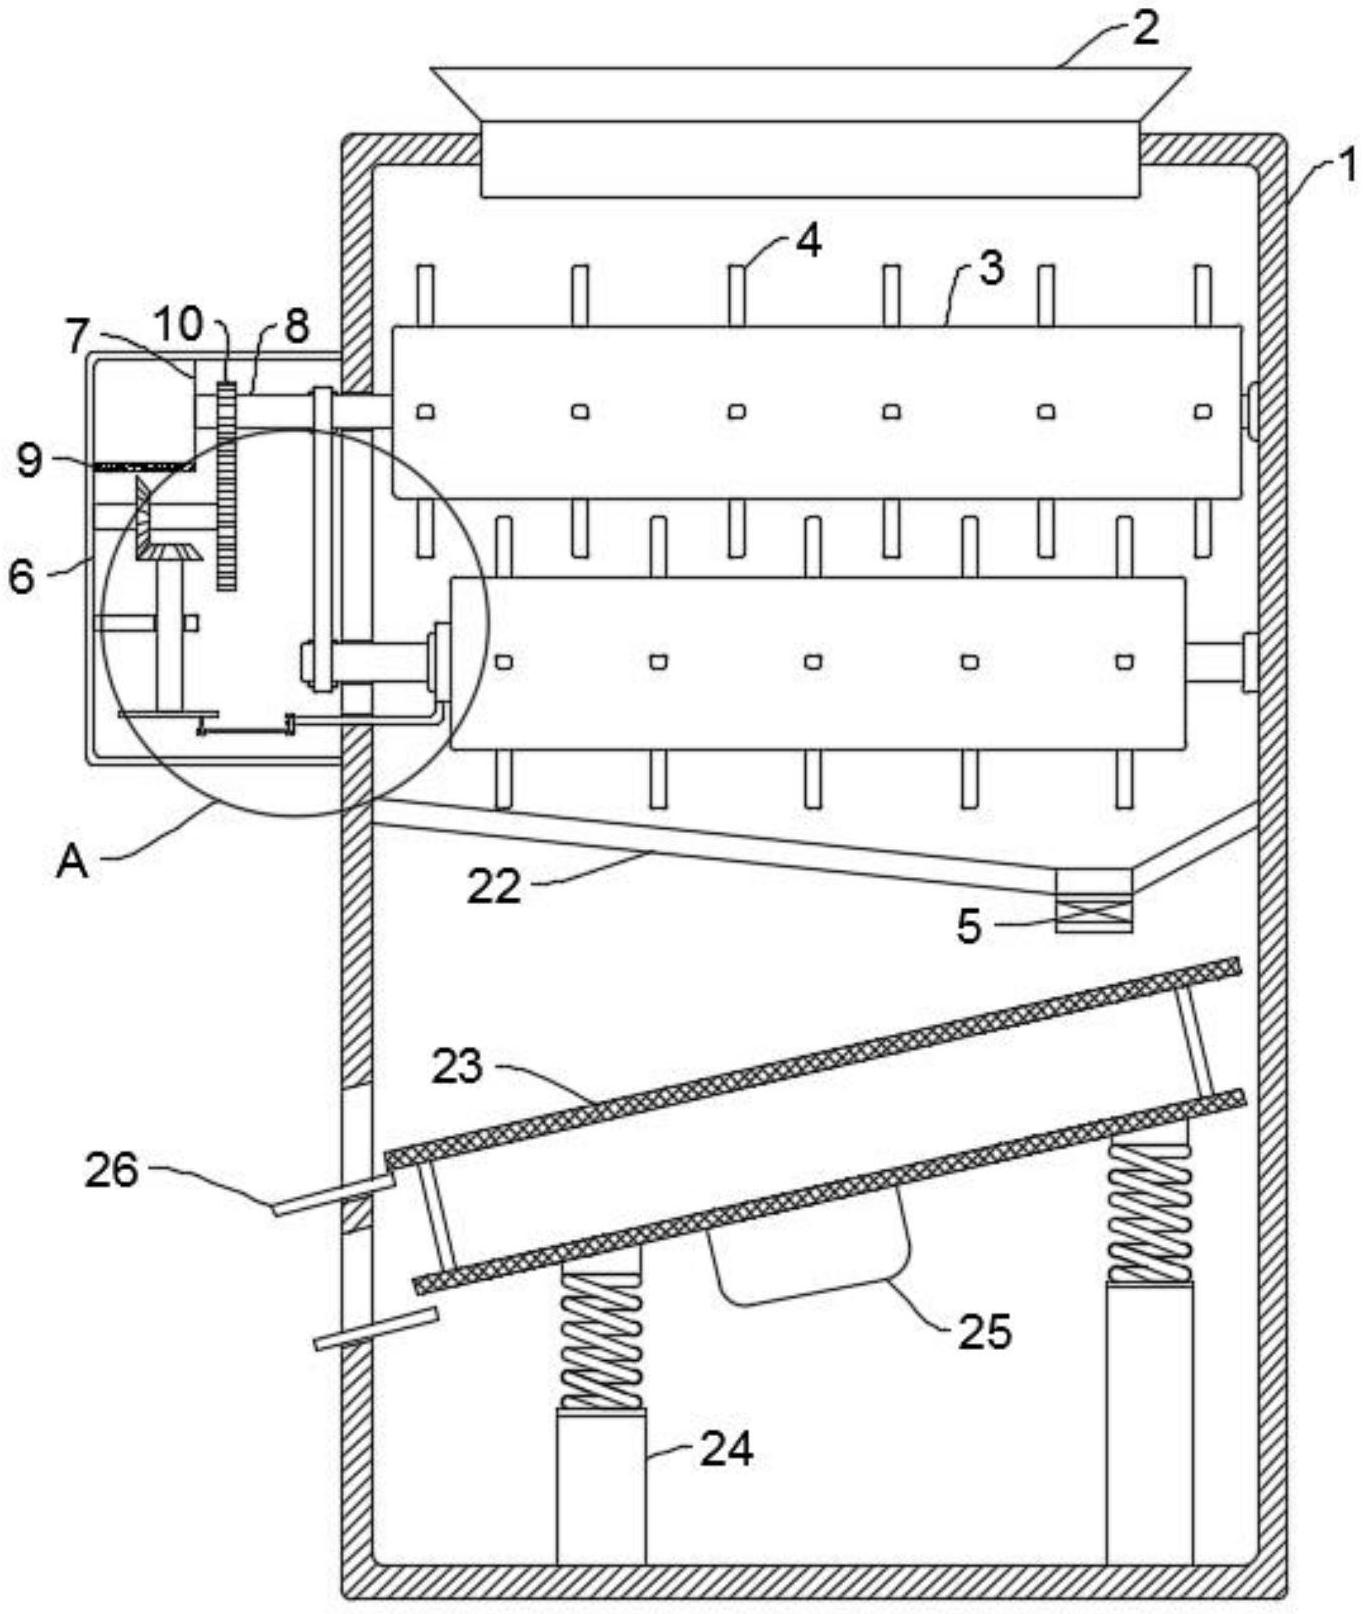 一种横向混滚式饲料加工机专利图